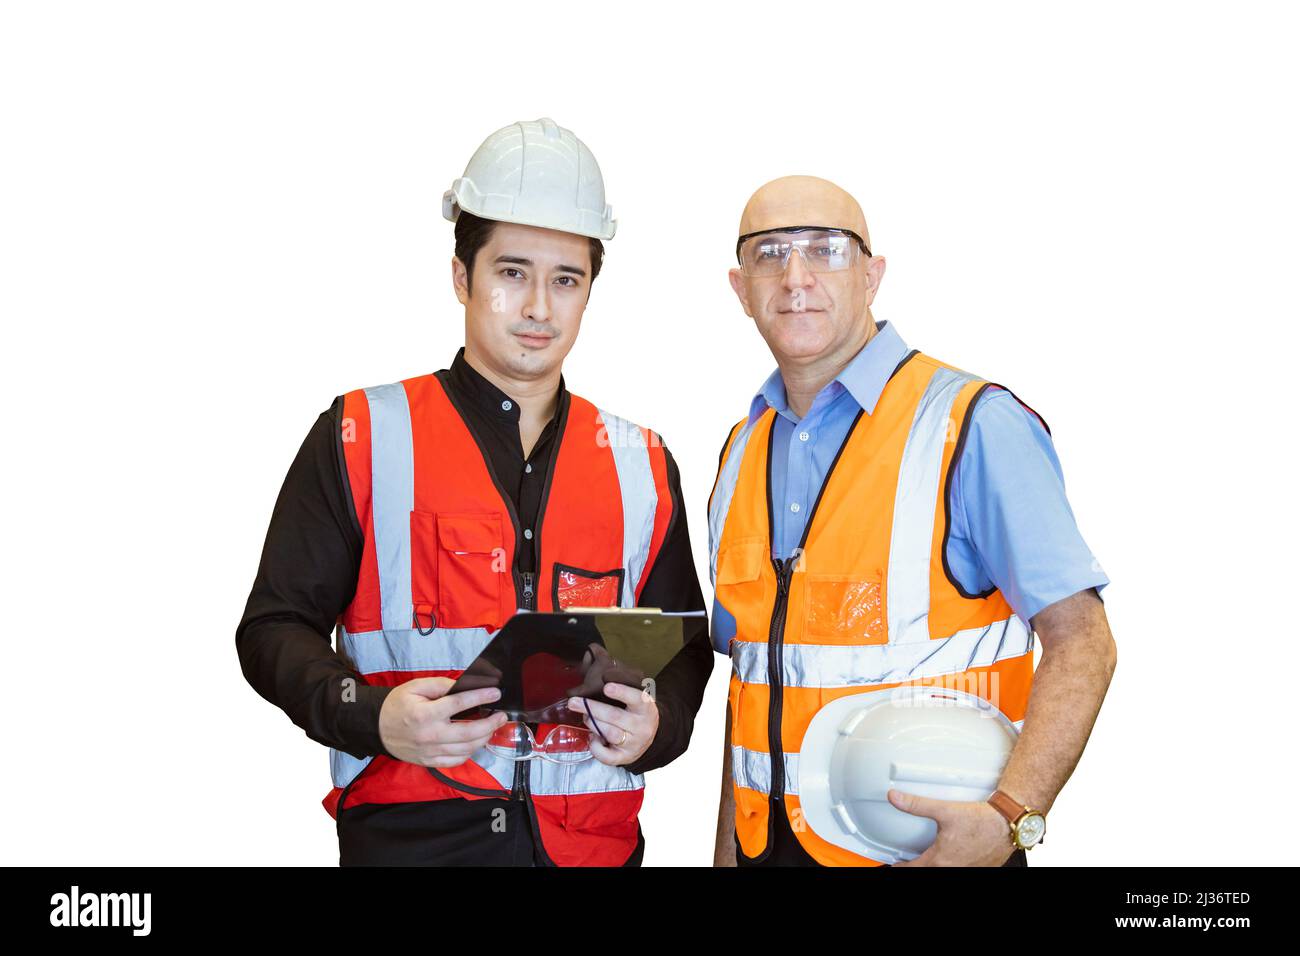 Arbeiter männlich Team Builder stehend Porträt isoliert auf weißem Hintergrund. Stockfoto